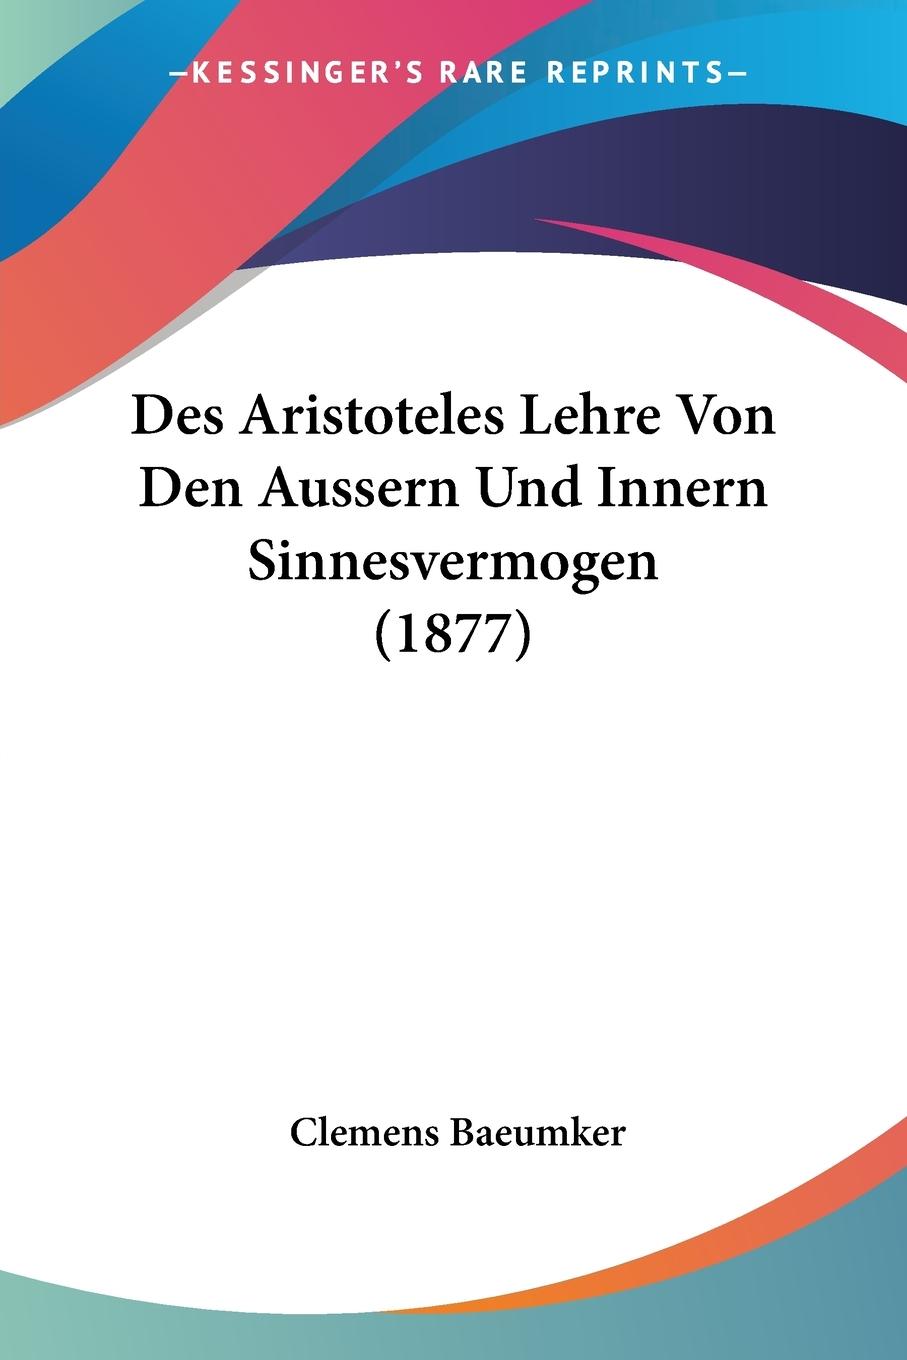 Des Aristoteles Lehre Von Den Aussern Und Innern Sinnesvermogen (1877) - Baeumker, Clemens